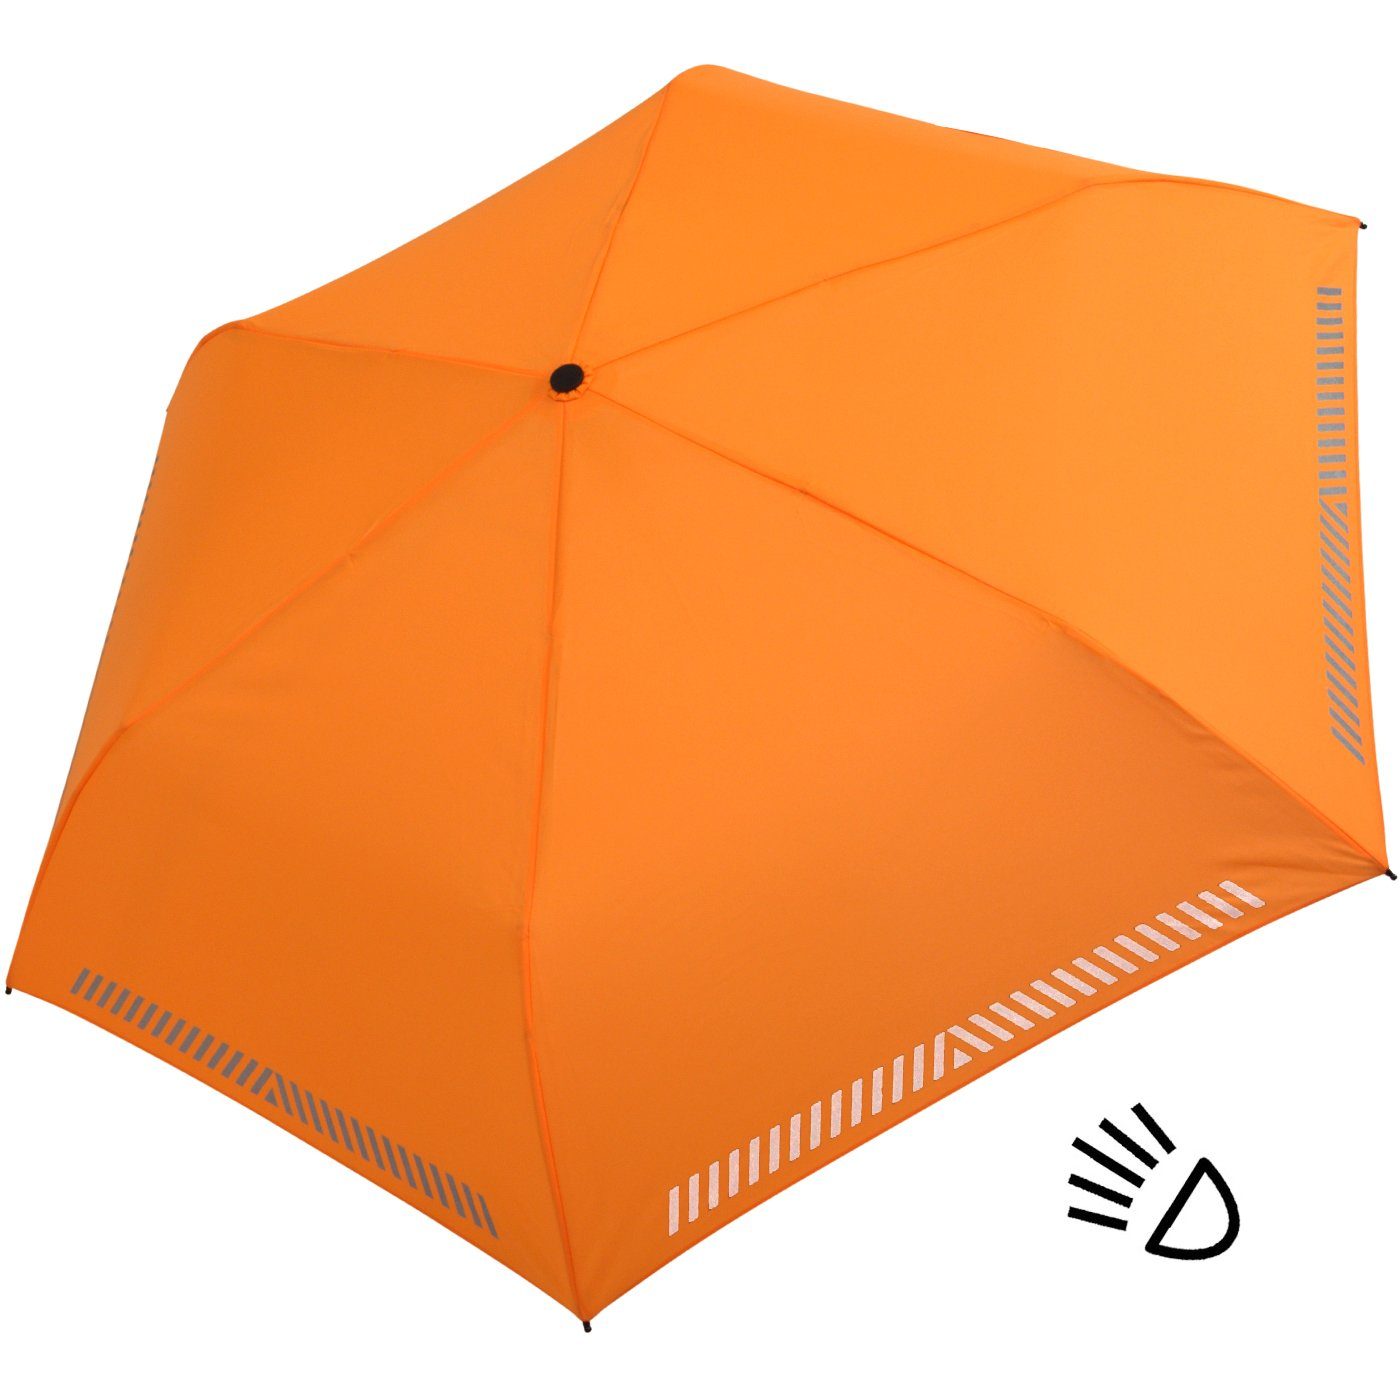 - Kinderschirm mit reflektierend, Reflex-Streifen Sicherheit durch Taschenregenschirm iX-brella orange Auf-Zu-Automatik, neon